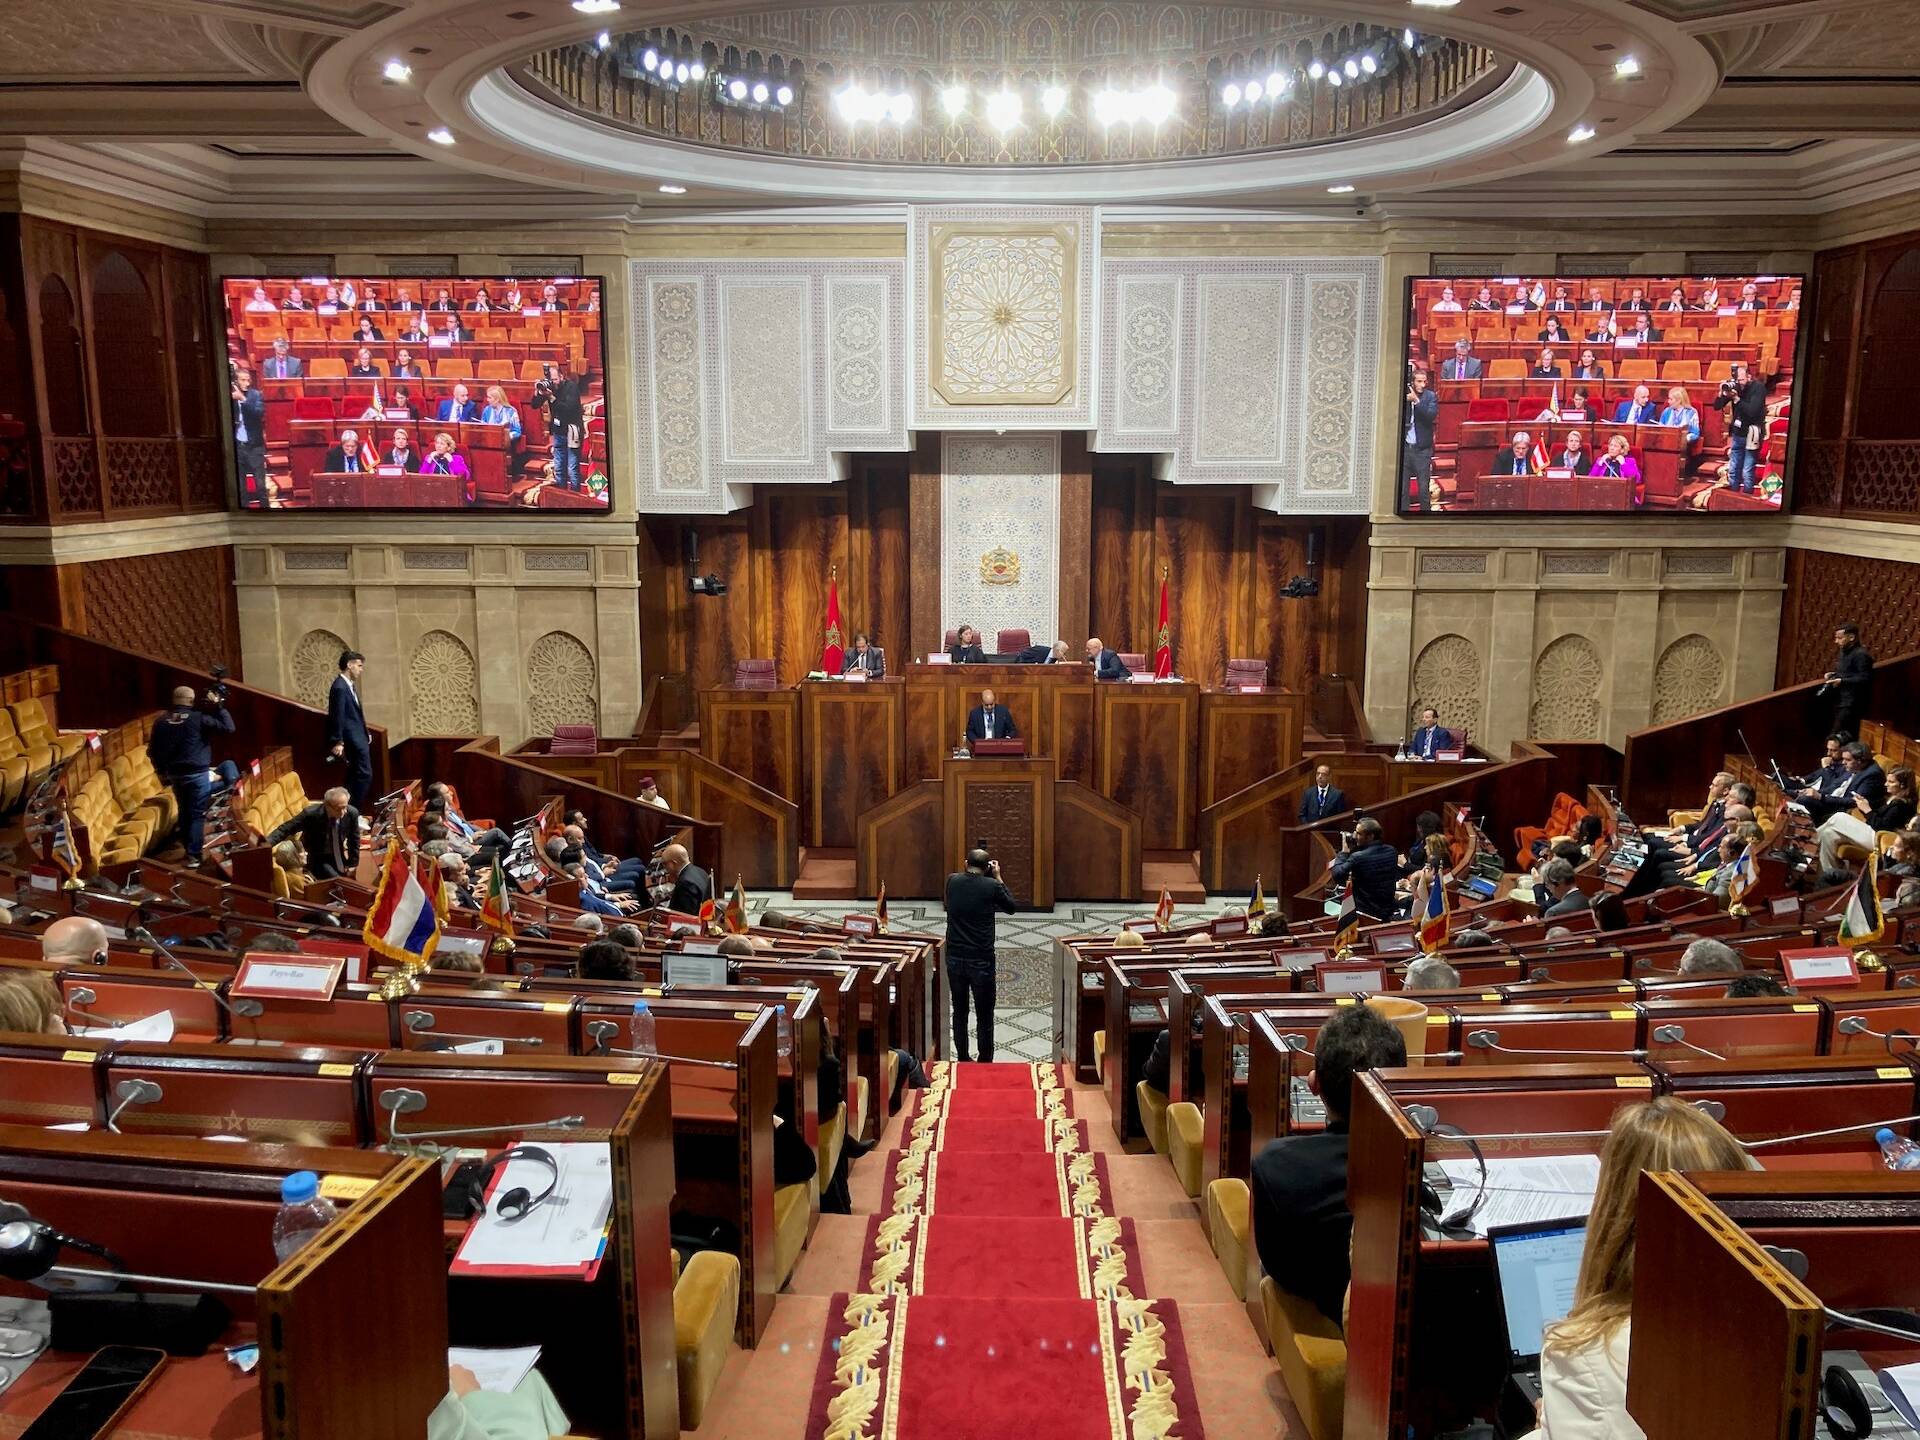 De plenaire zaal van het Marokkaanse parlement in Rabat.